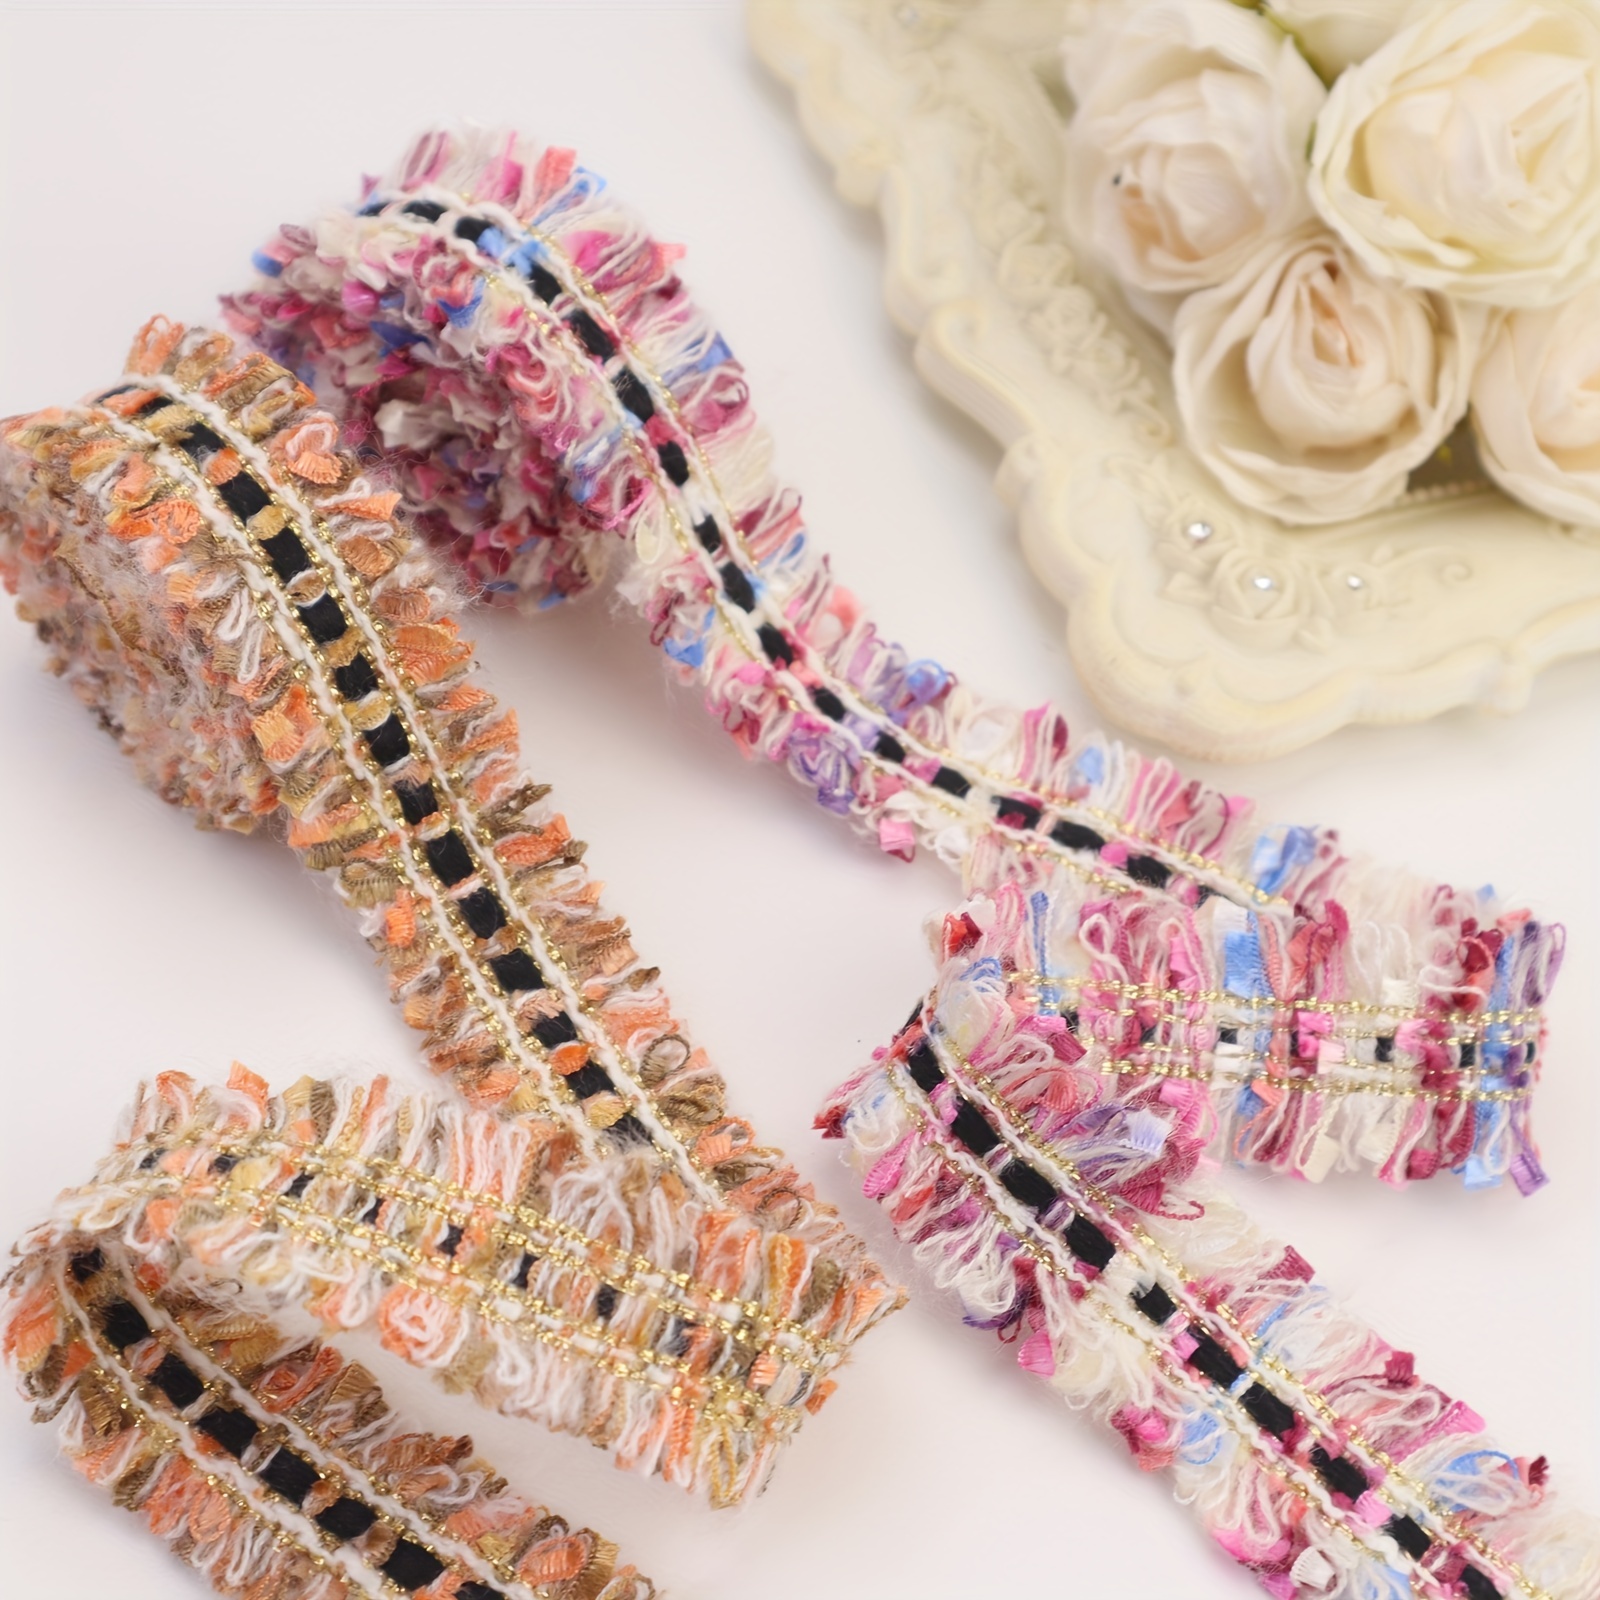 Rose Lace & Braid – Fabric and Fringe